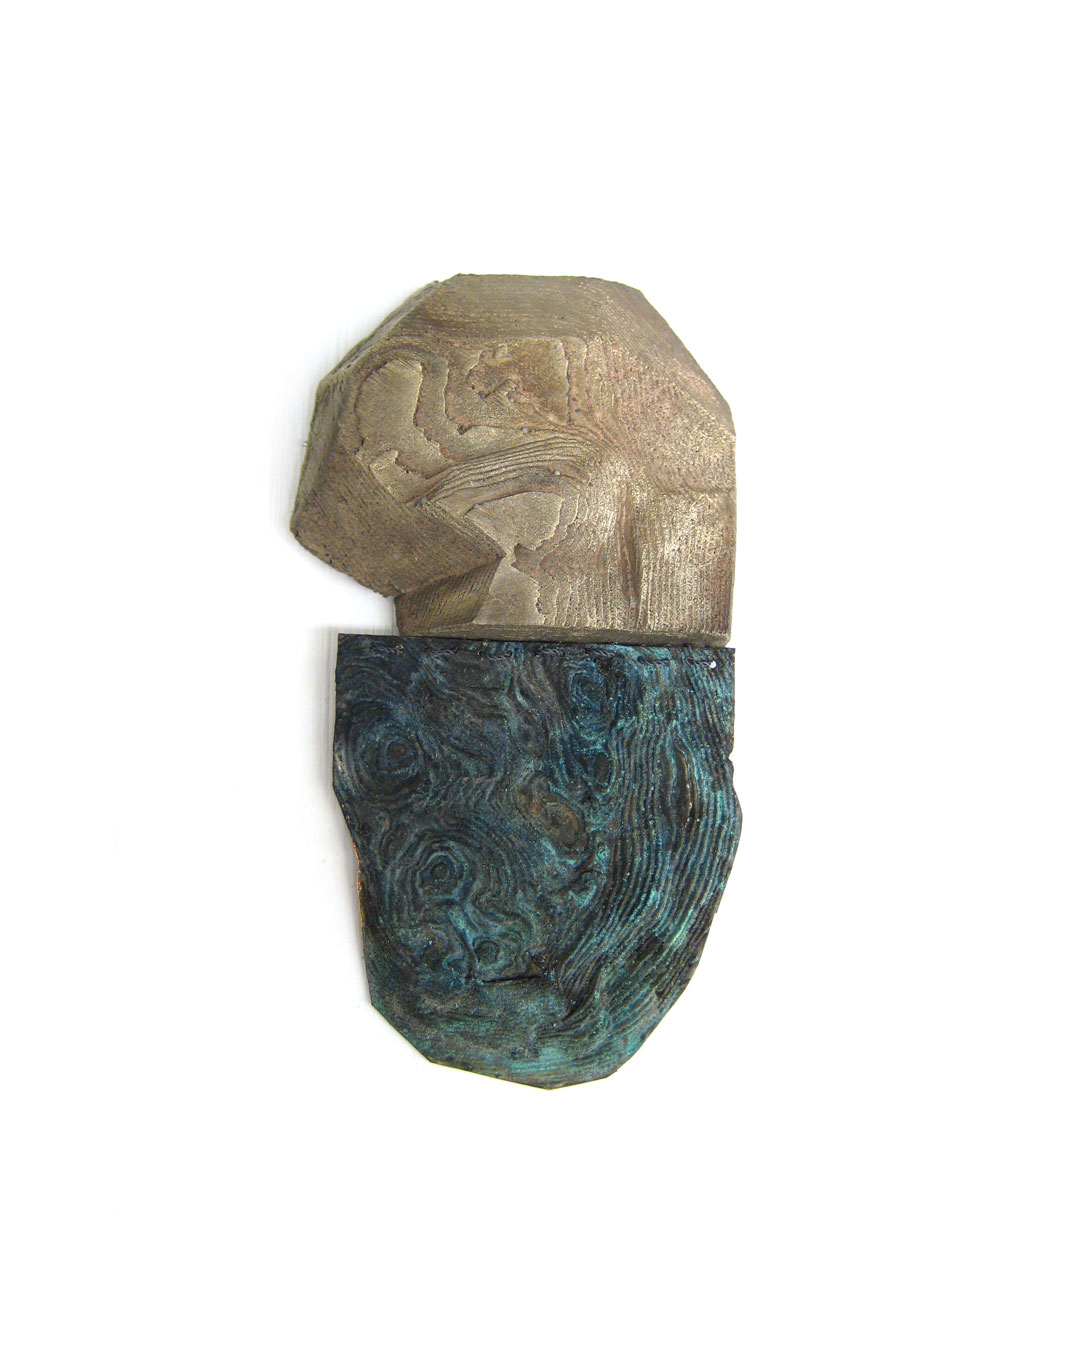 Jenny Klemming, Border Line, 2010, brooch; copper, silver, acrylic resin, silk, steel, 95 x 55 x 20 mm, €875